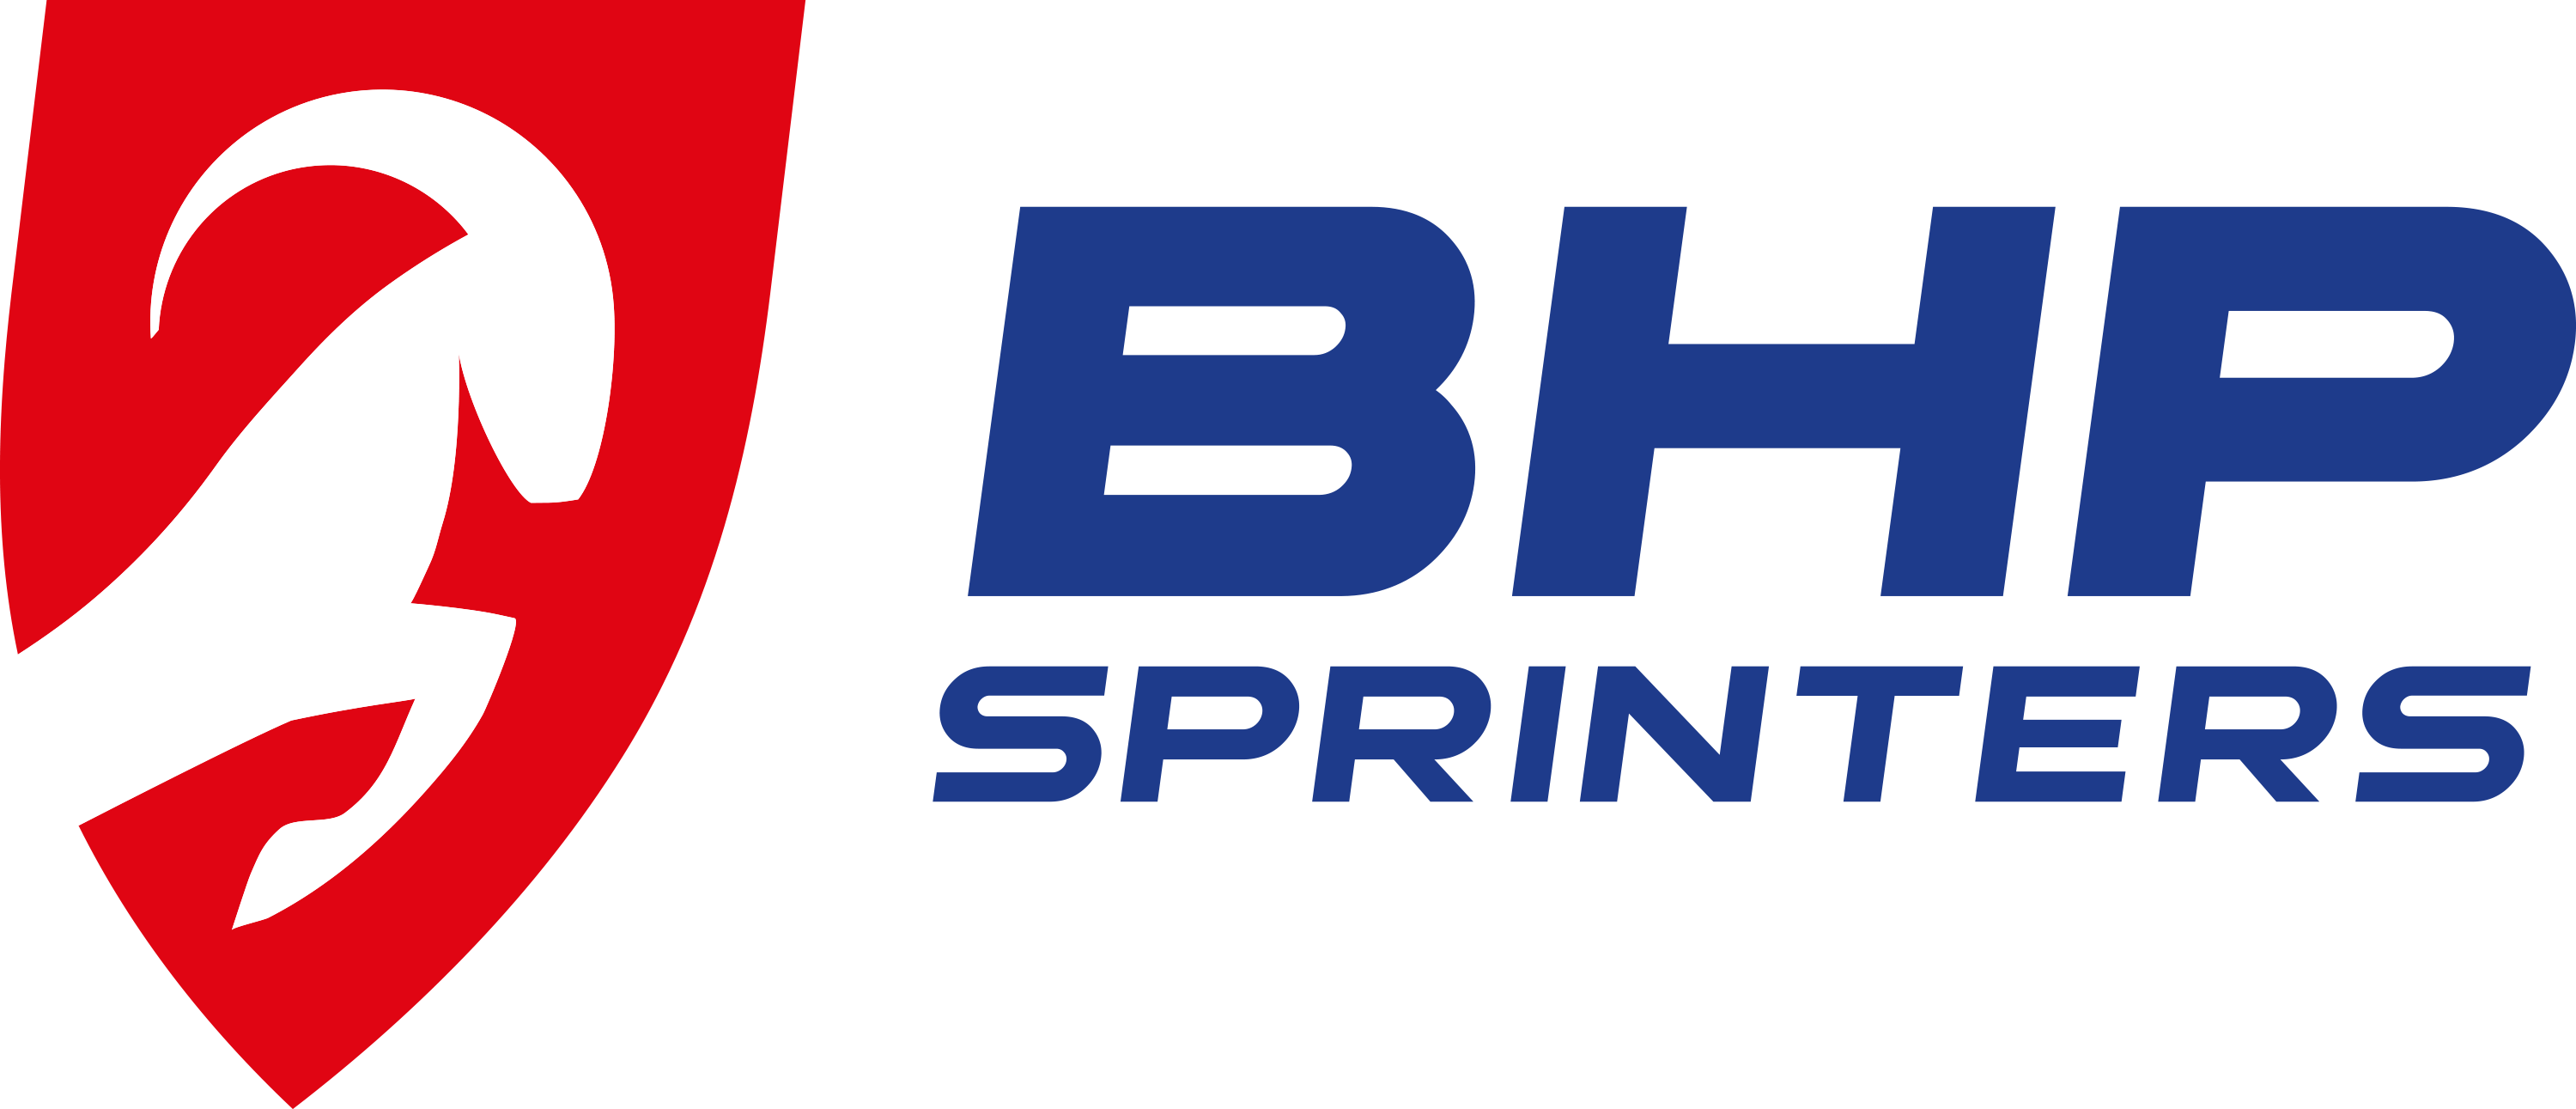 Znalezione obrazy dla zapytania logo bhp sprinters